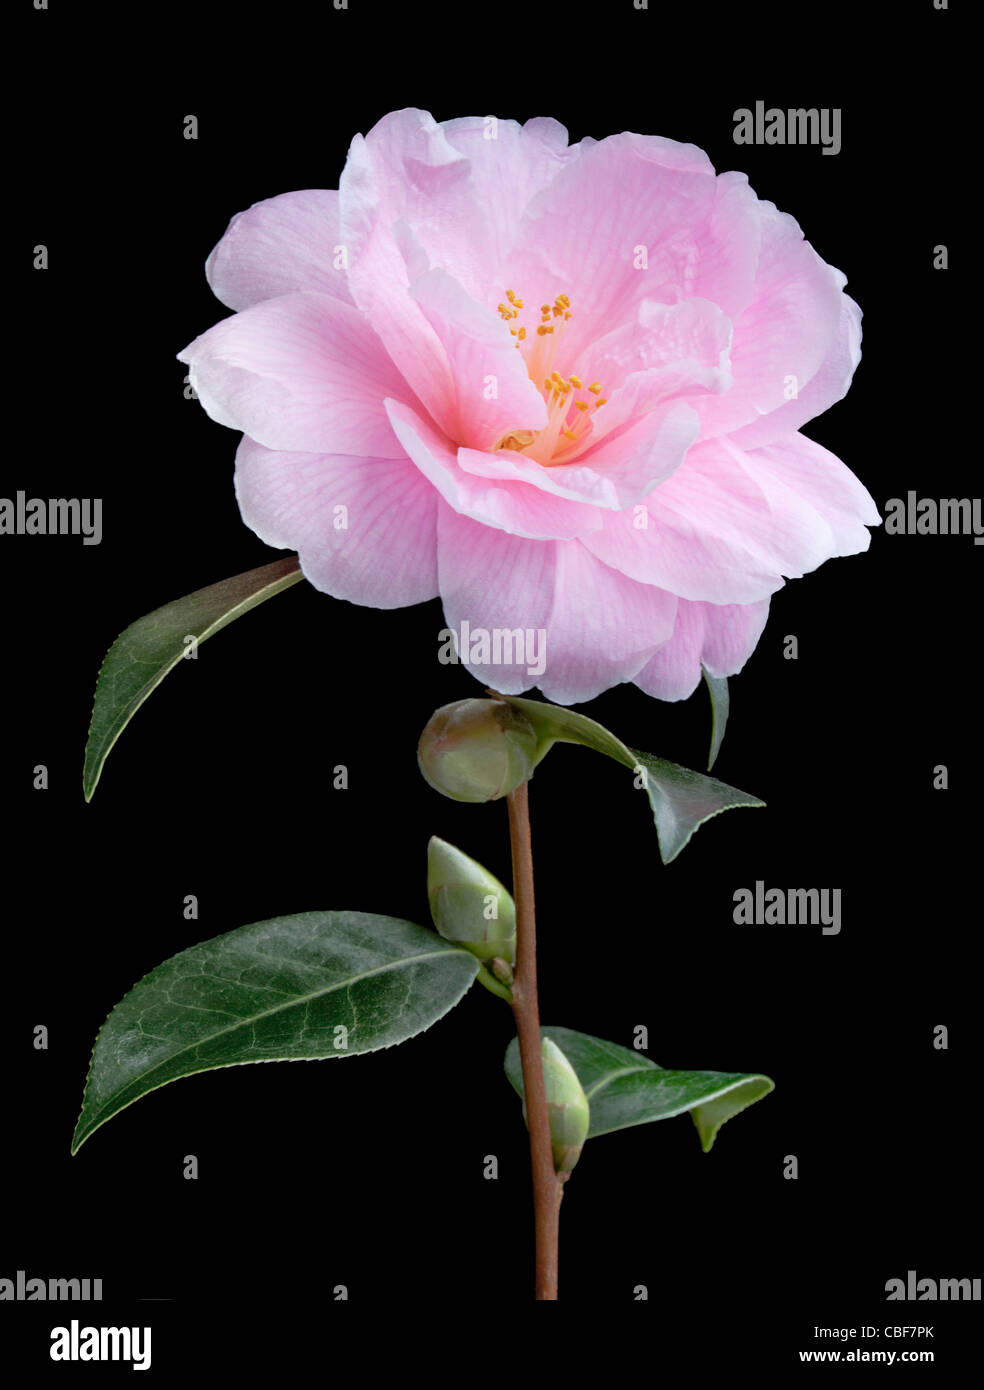 X Camellia williamsii 'Donation', Camelia, flor rosa sujeto, fondo negro. Foto de stock